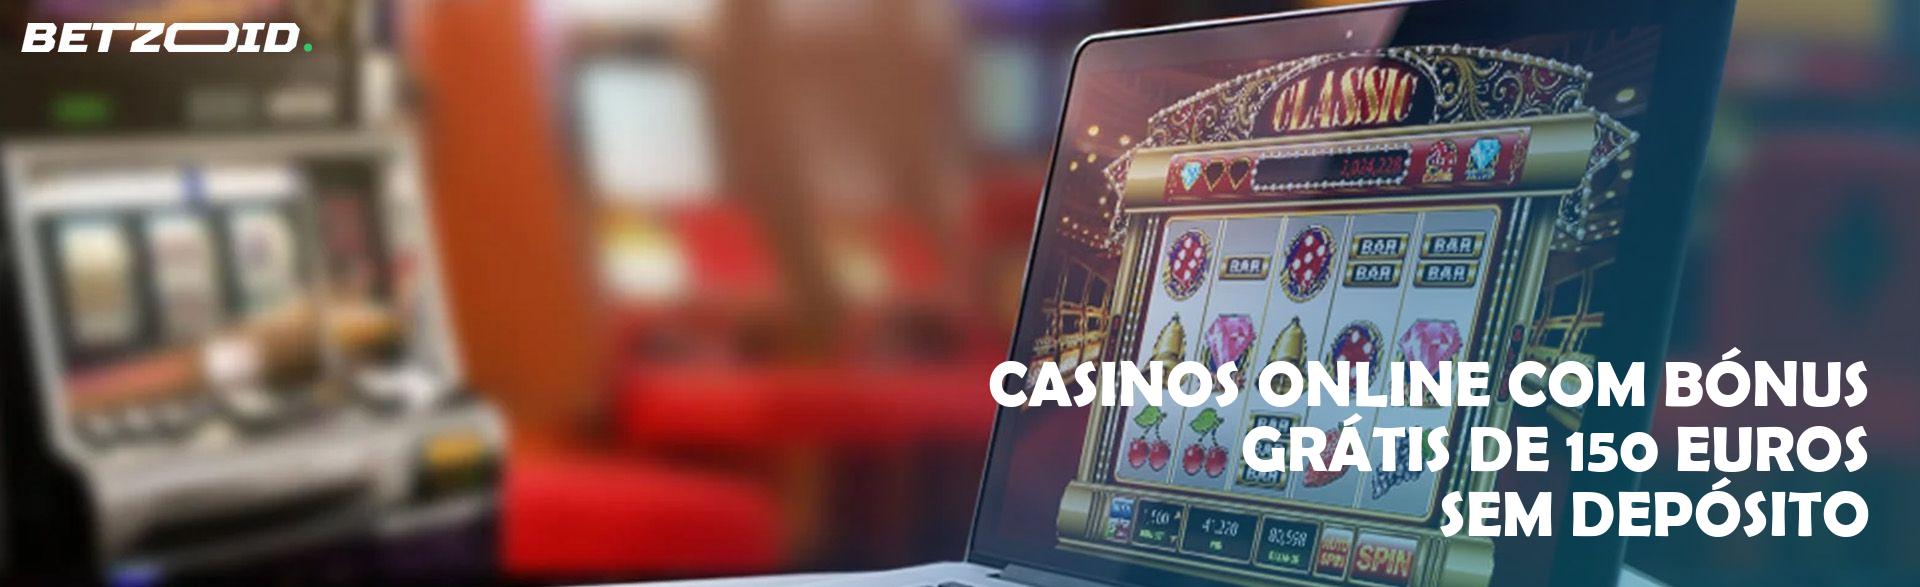 Casinos Online com Bónus Grátis de 150 Euros sem Depósito.